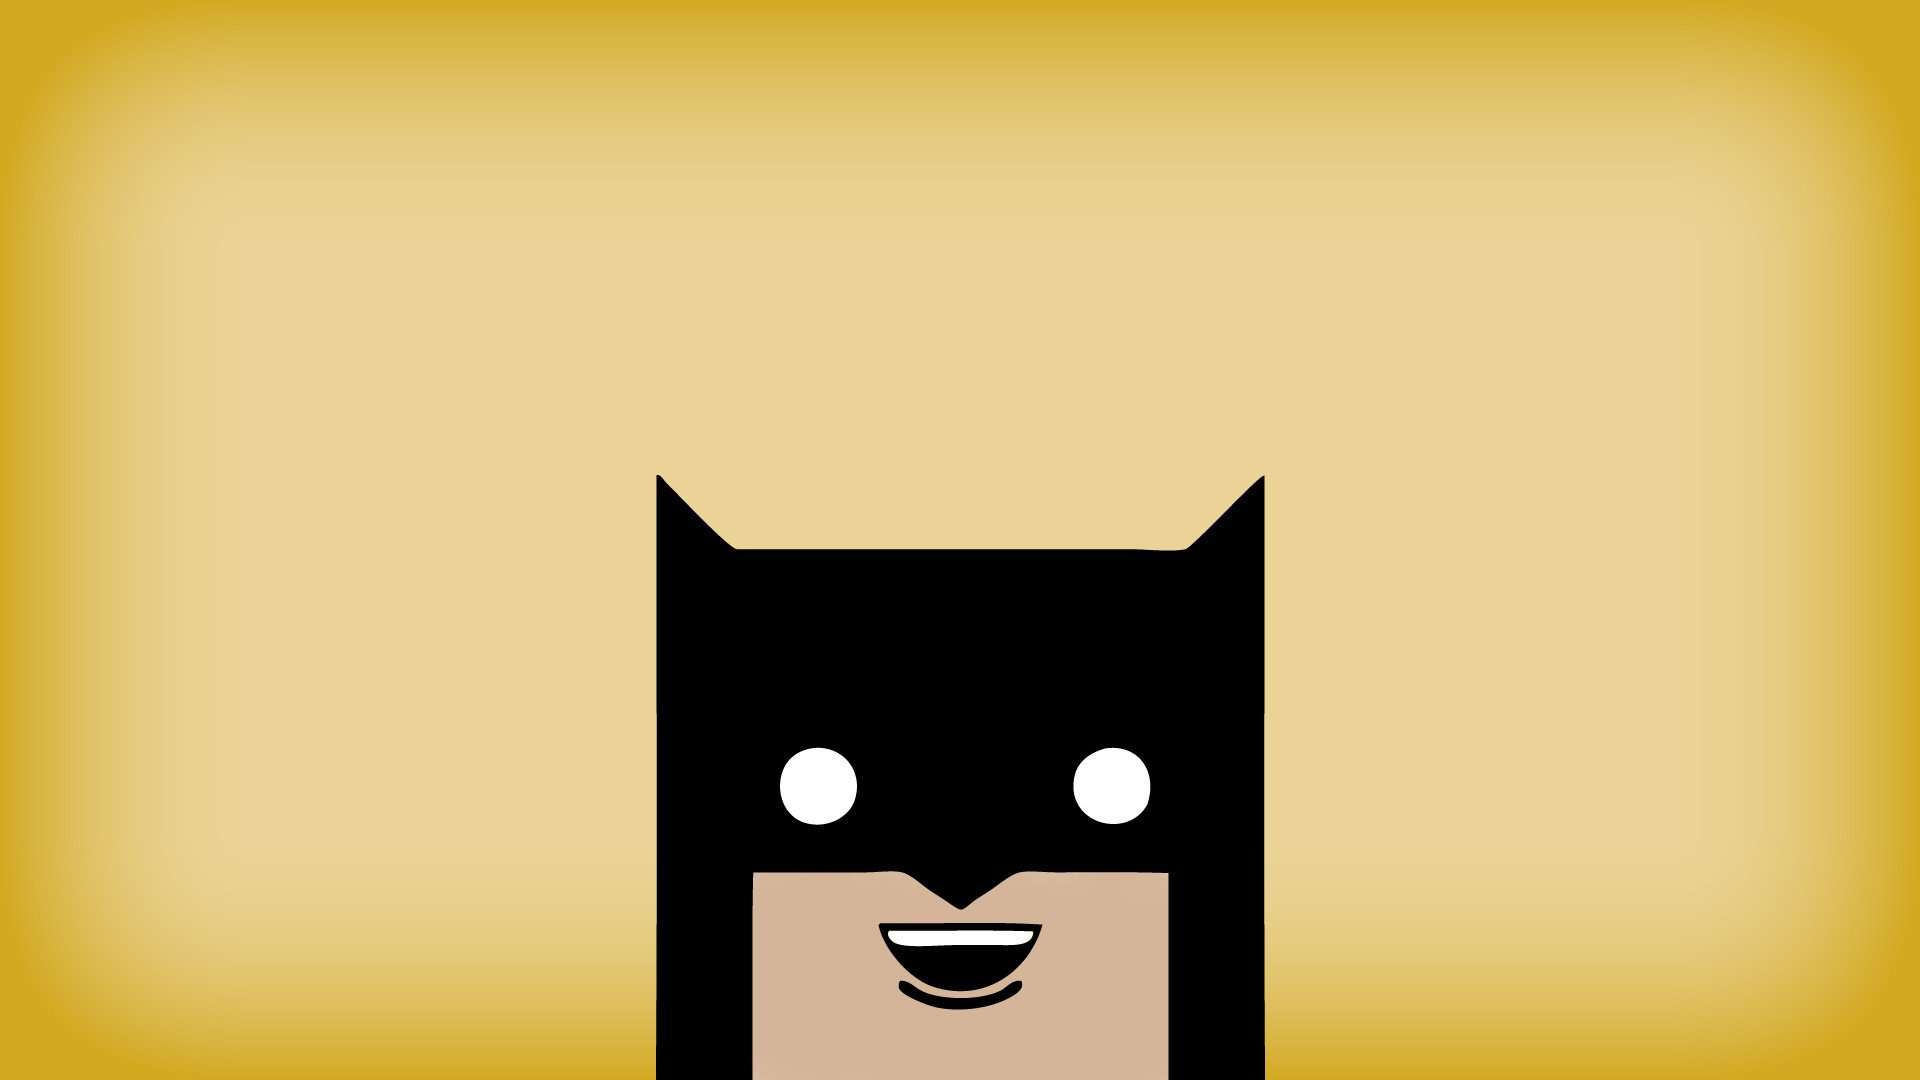 Batman-Minimalist-Wallpapers-7